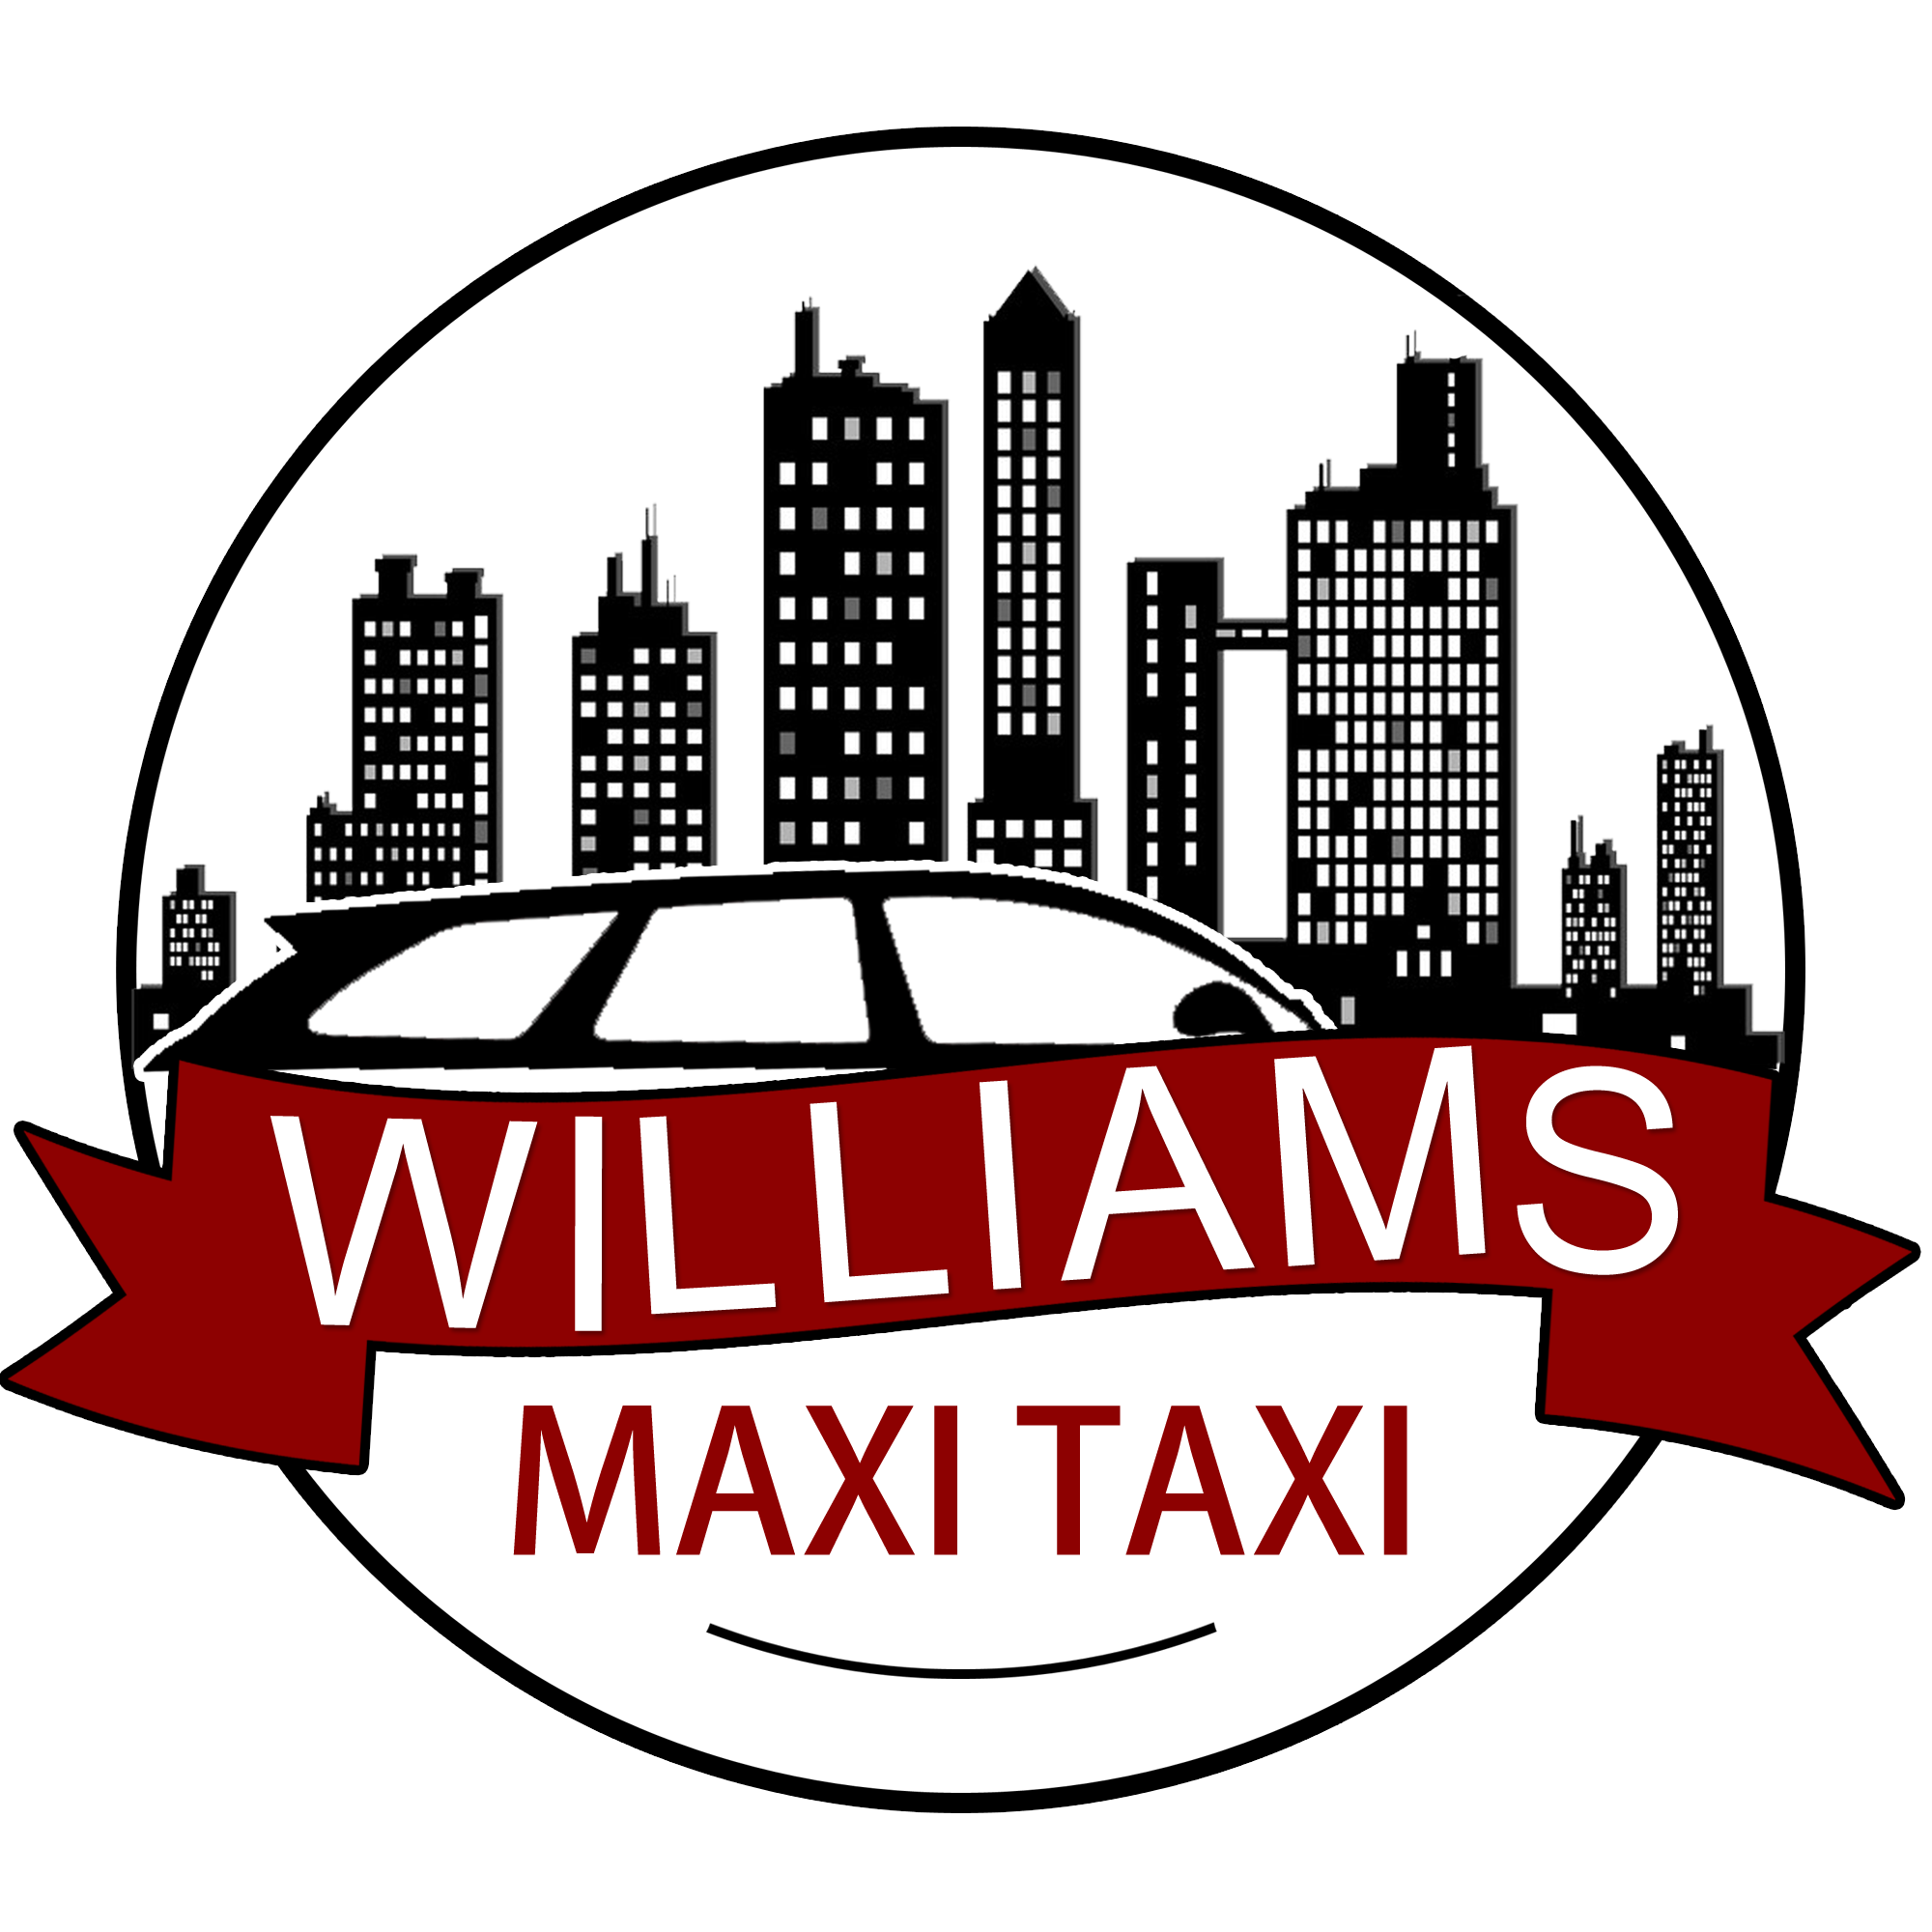 Williams maxi taxi